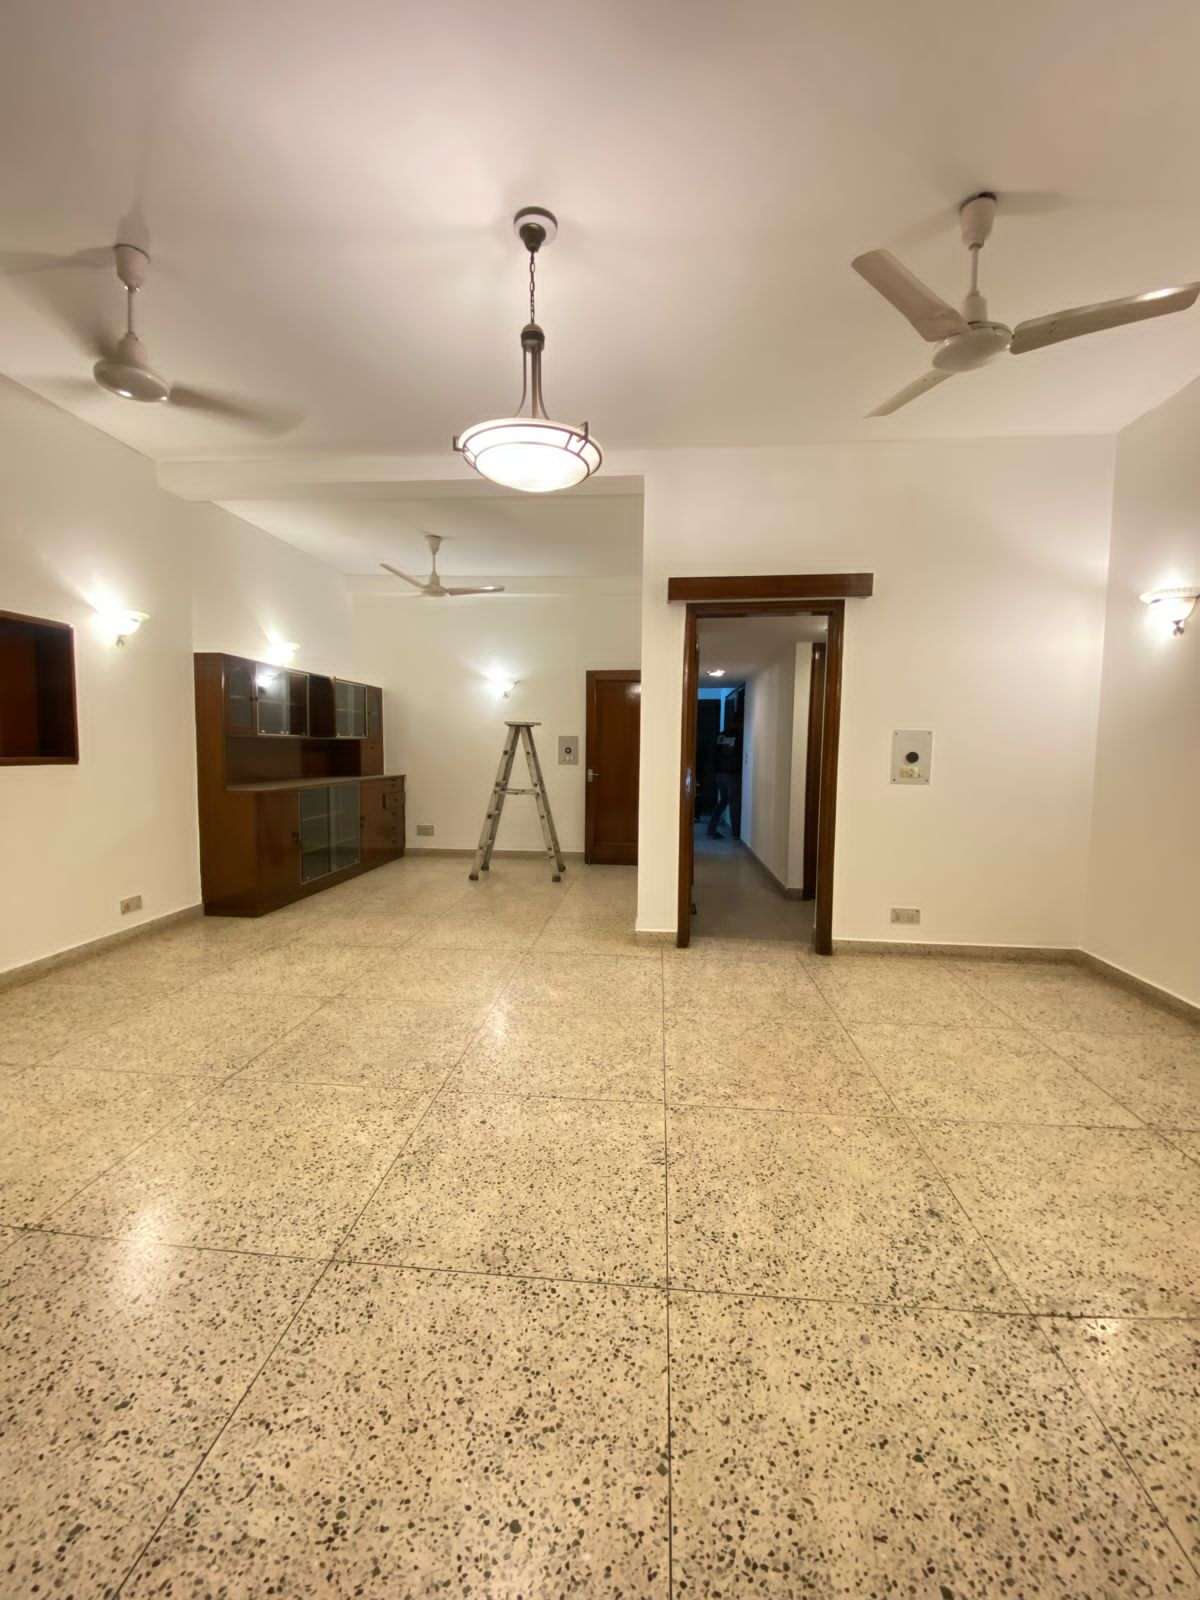 2 BHK Builder Floor For Rent in Sarvapriya Vihar Delhi 6619158